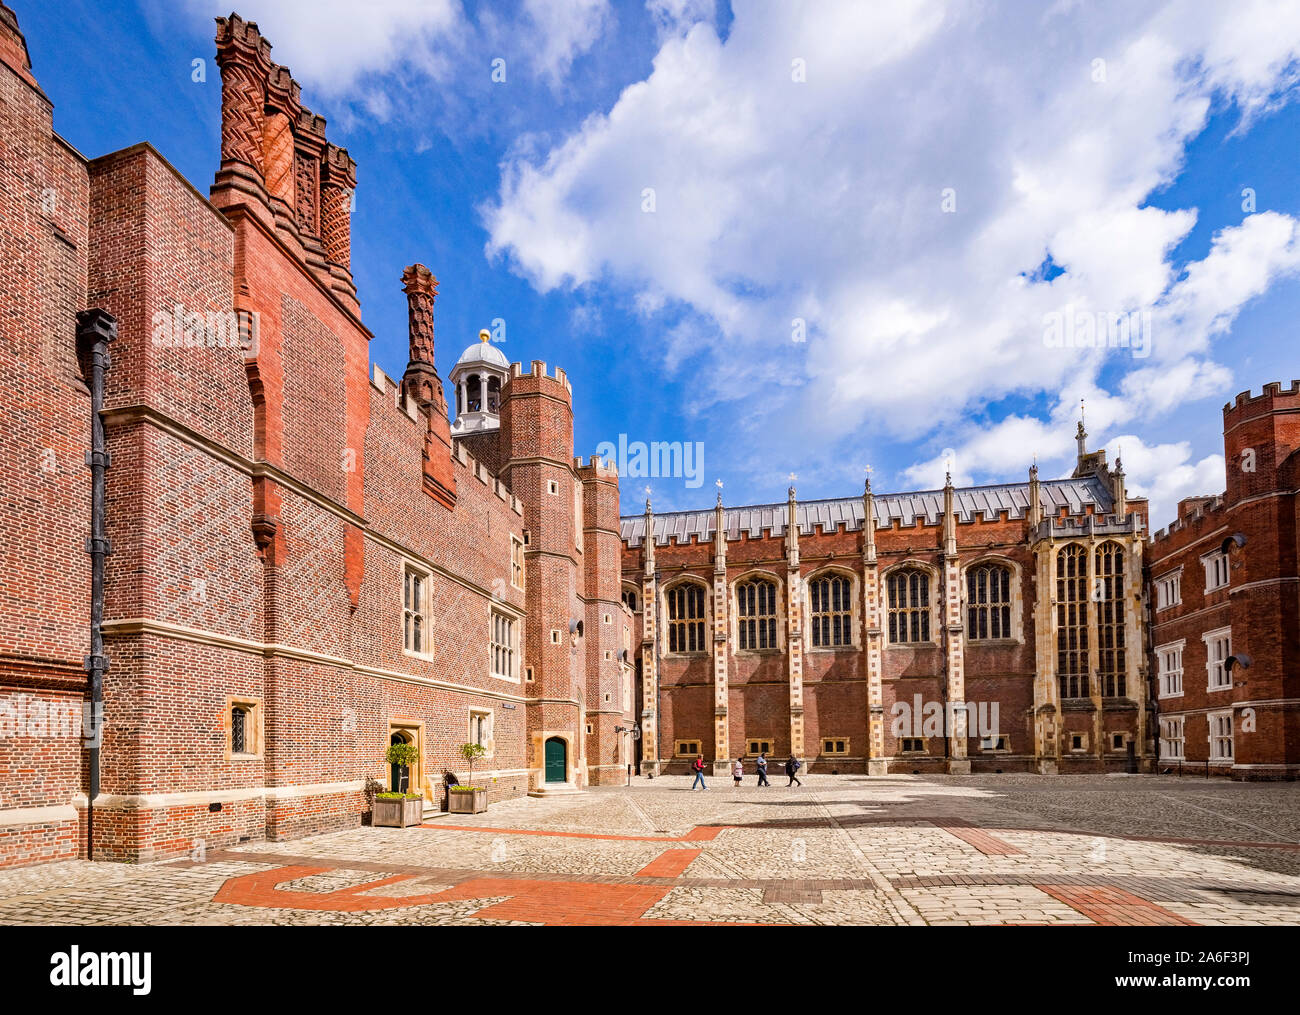 9 juin 2019 : Richmond upon Thames, London, UK - La Cour de l'horloge de Hampton Court Palace, l'ancienne résidence royale dans l'ouest de Londres. Banque D'Images